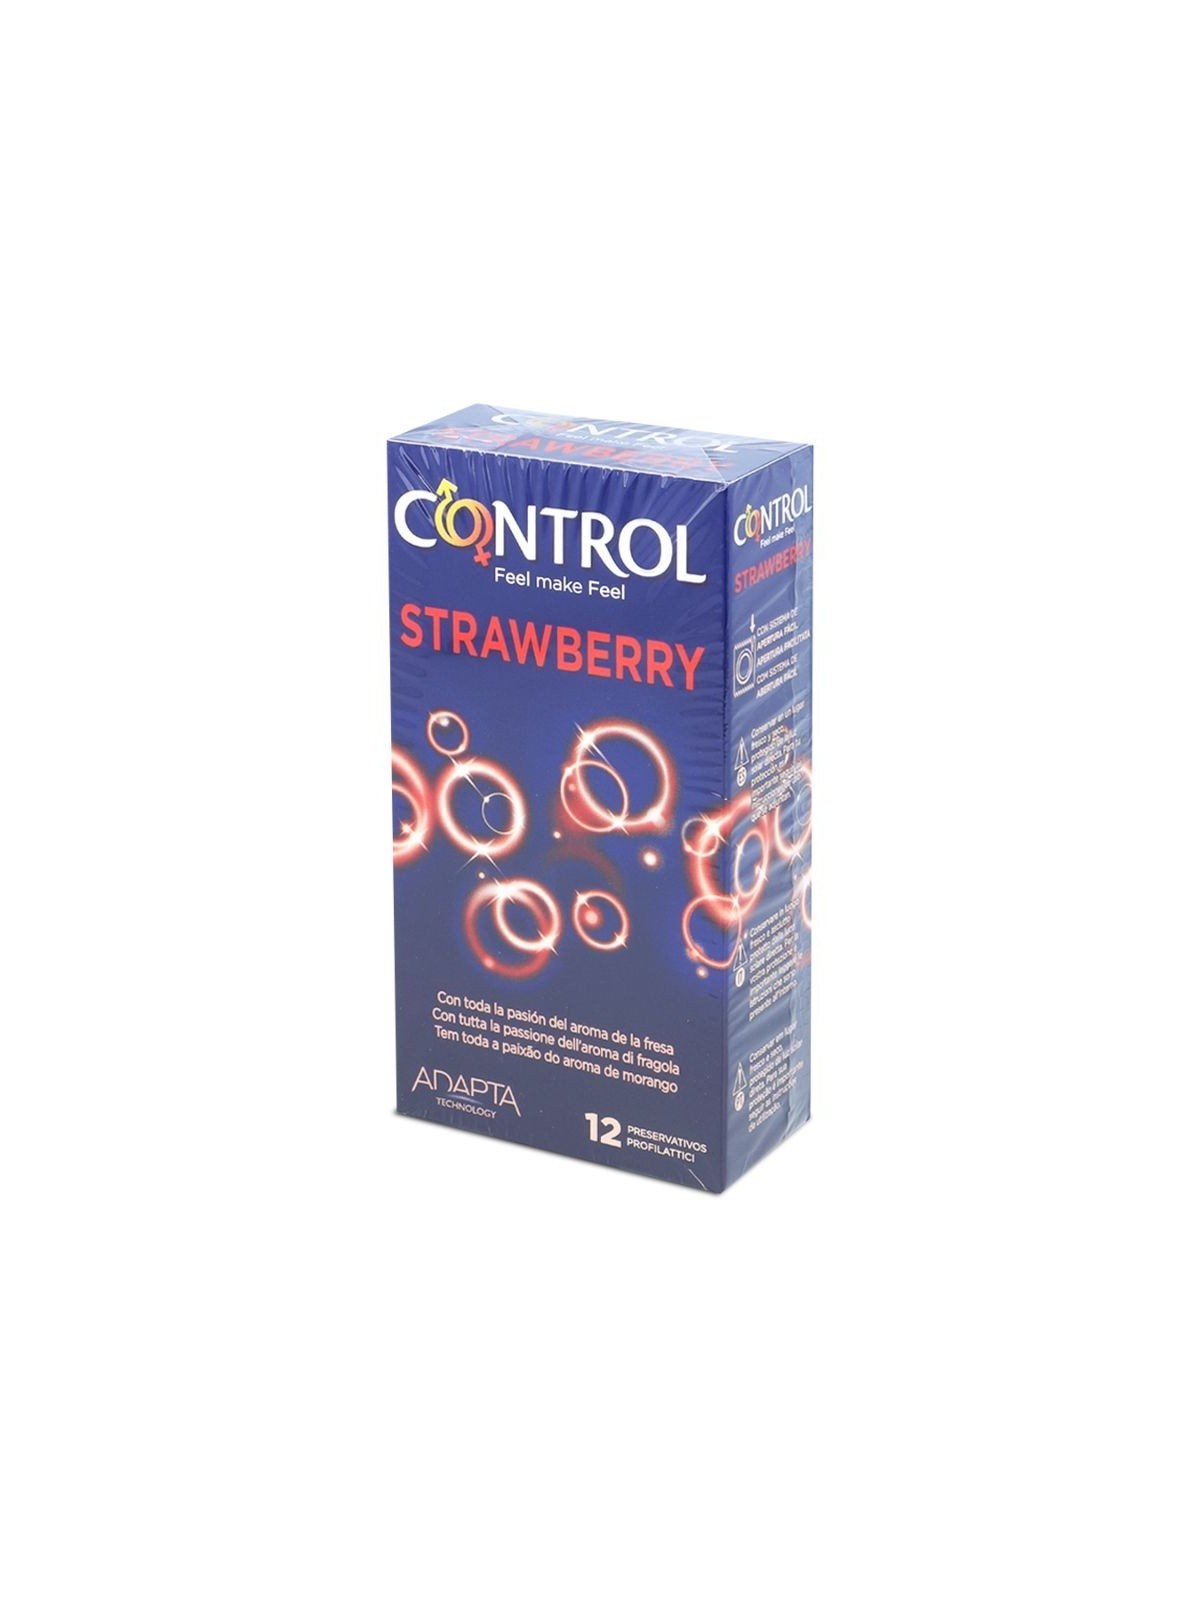 Control Adapta Fresa - Comprar Condones de sabor Control - Preservativos de sabores (1)